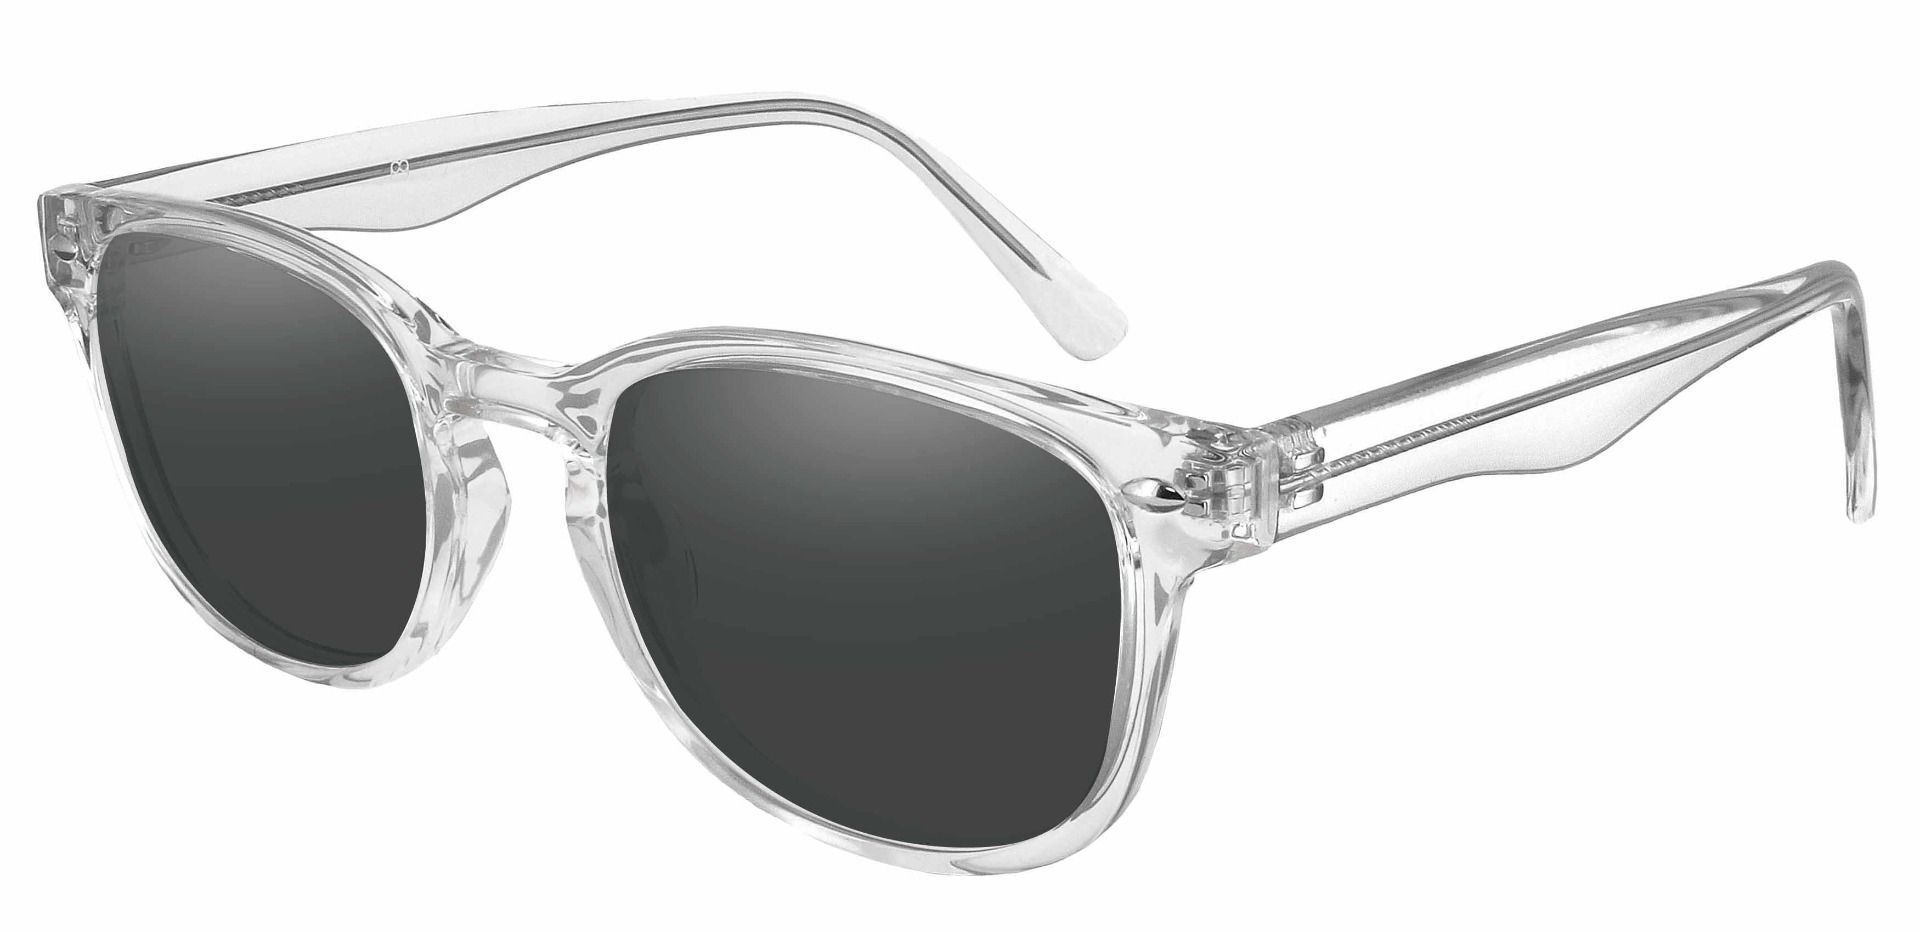 Swirl Classic Square Prescription Sunglasses Clear Frame With Gray